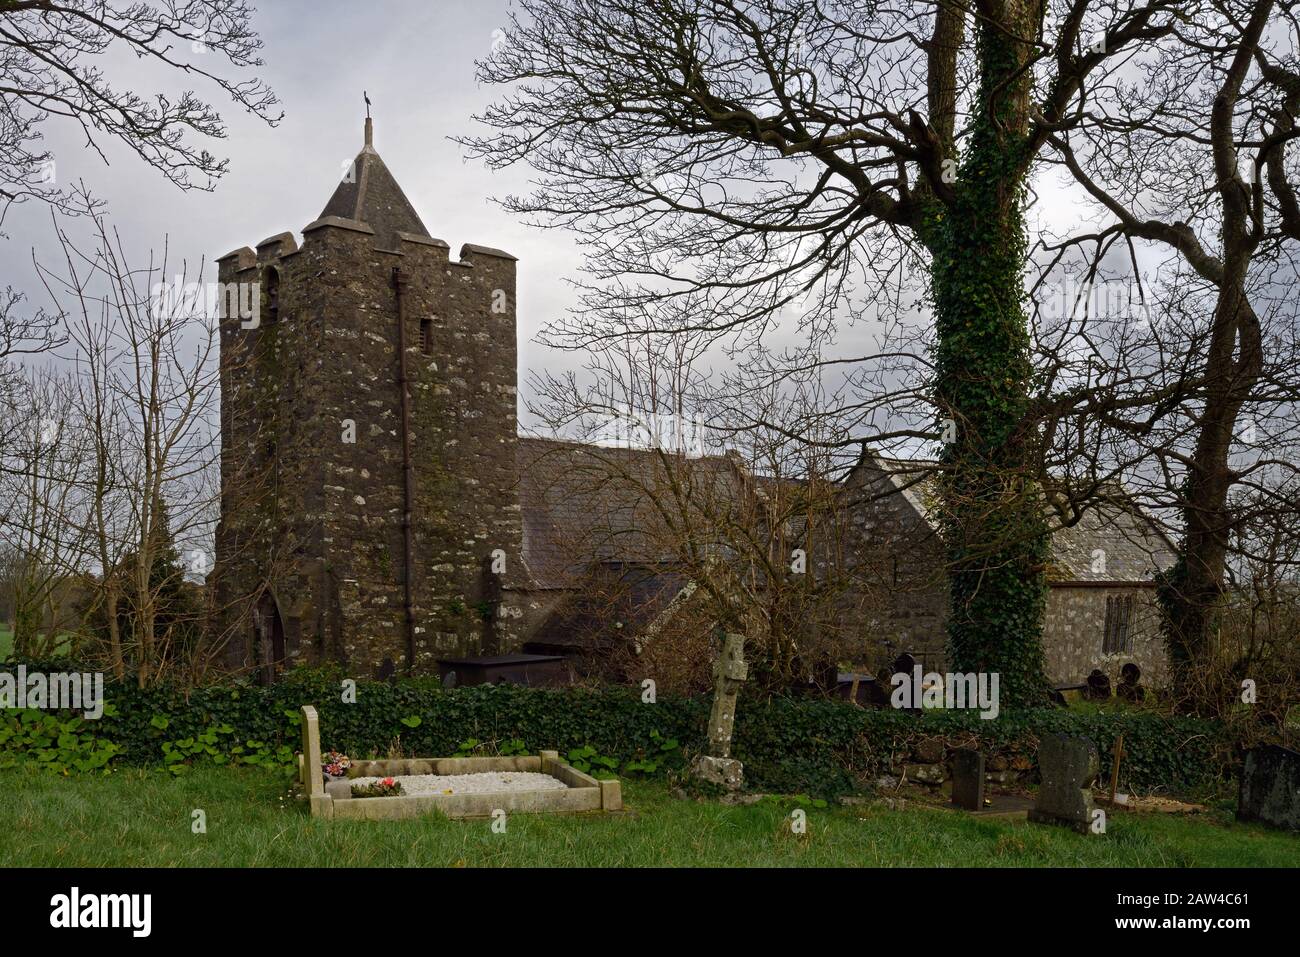 La iglesia de Santa María, Llanfair-yng-Nghornwy, es una iglesia medieval en Anglesey. Se remonta al siglo 11 y ahora es un edificio catalogado de Grado I. Foto de stock